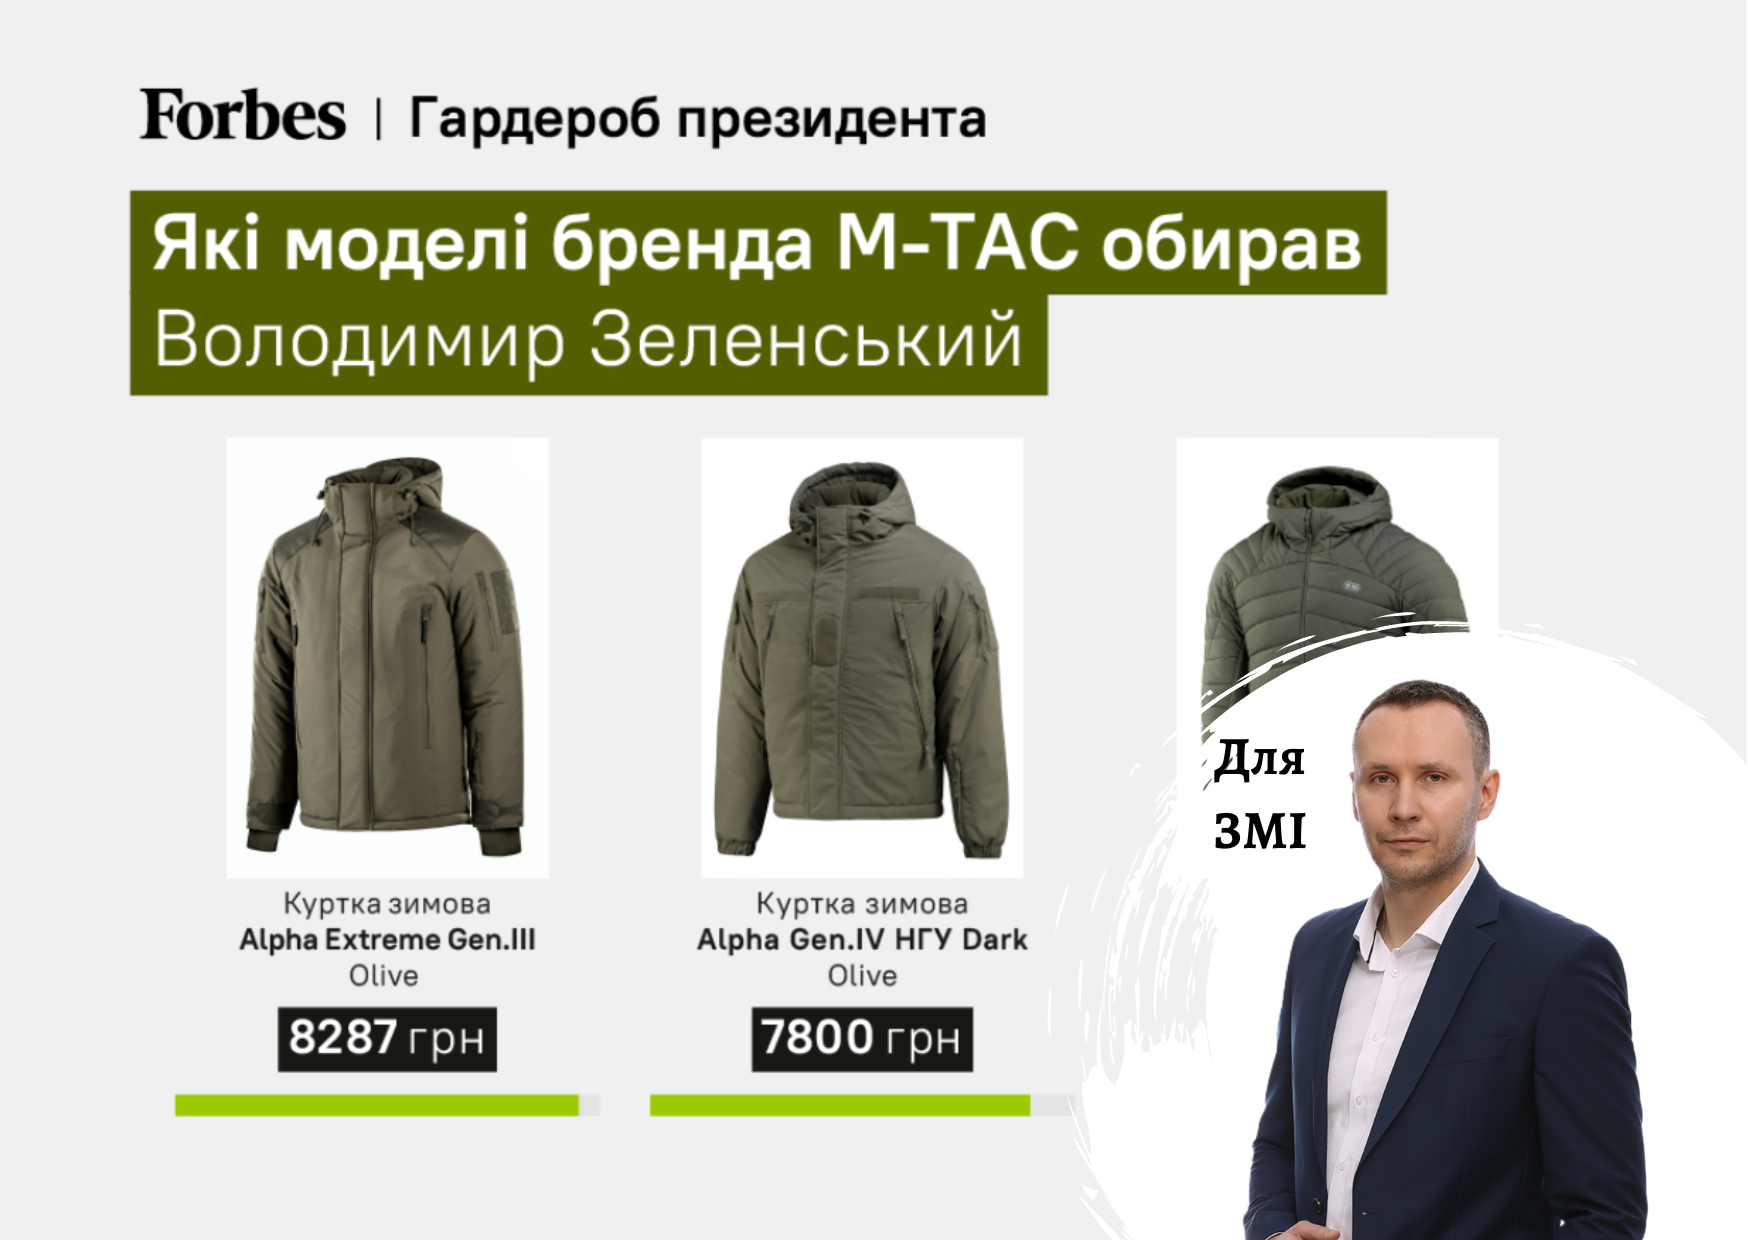 Як бренд військового одягу M-TAC переріс у великий бізнес - коментарі гендиректора Pro-Consulting Олександра Соколова по ринку. FORBES